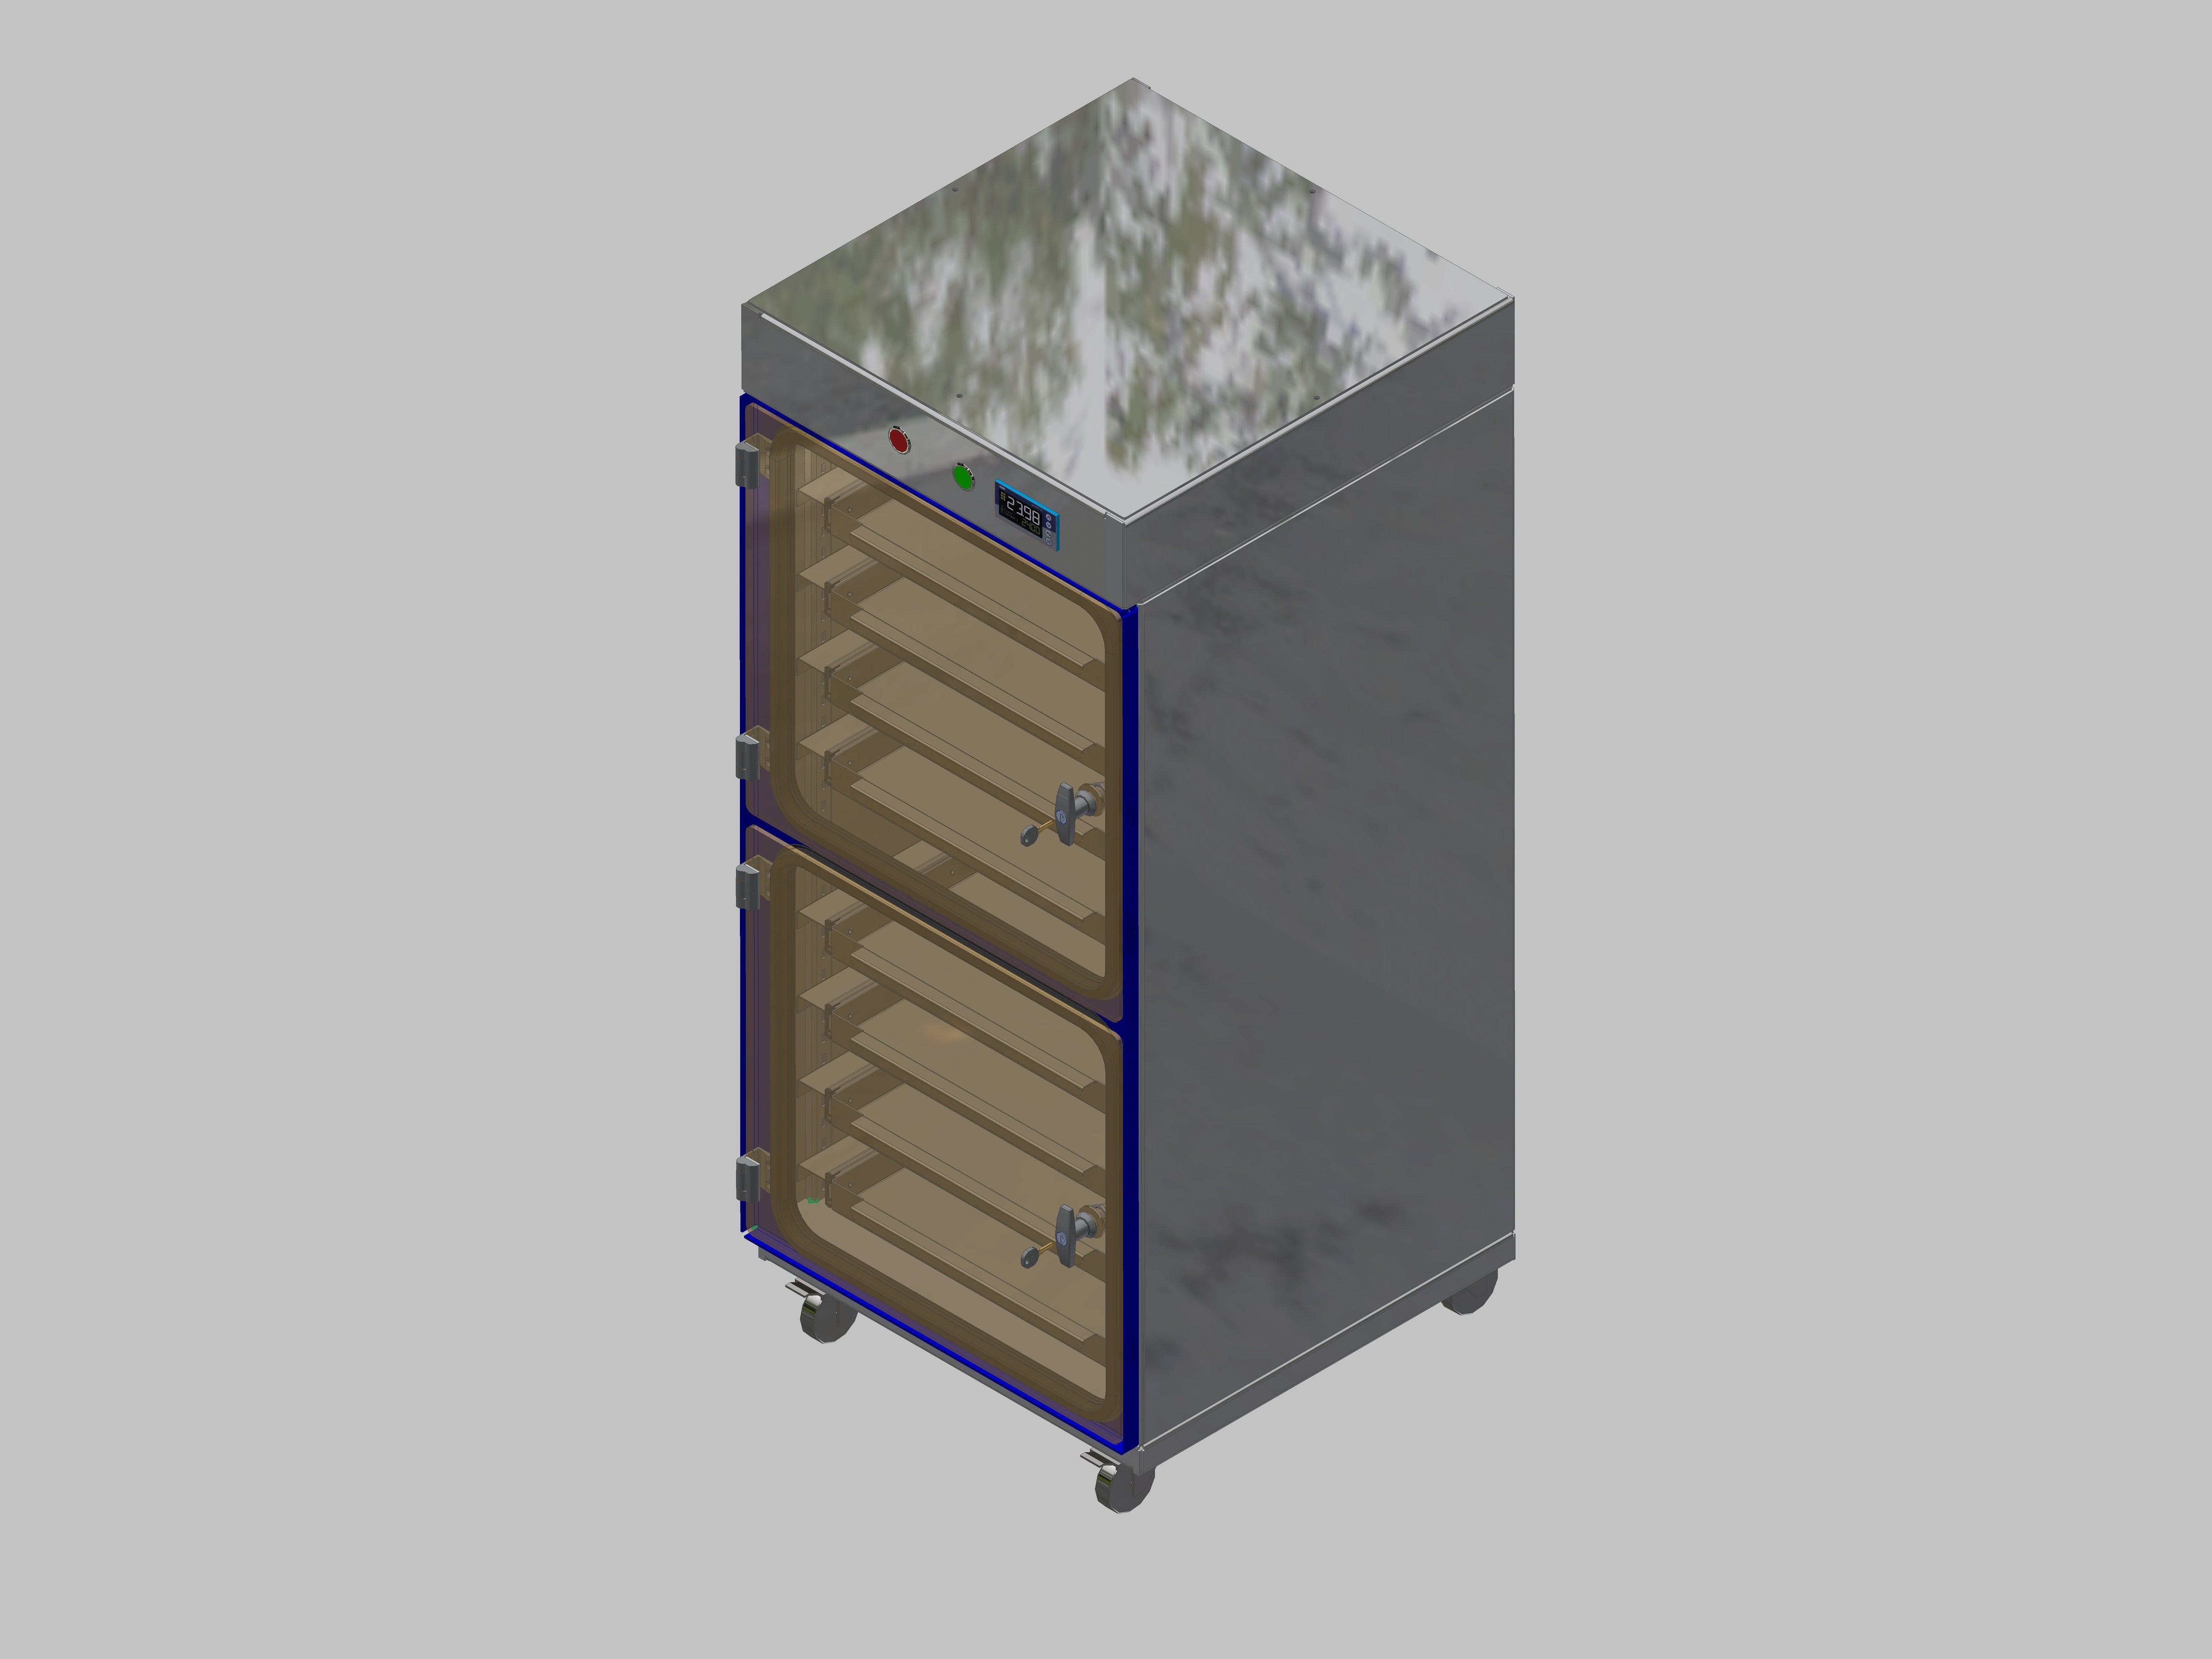 Trockenlagerschrank-ITN-600-2 mit 4 Schubladen pro Kompartiment  und Sockelauführung mit Rollen